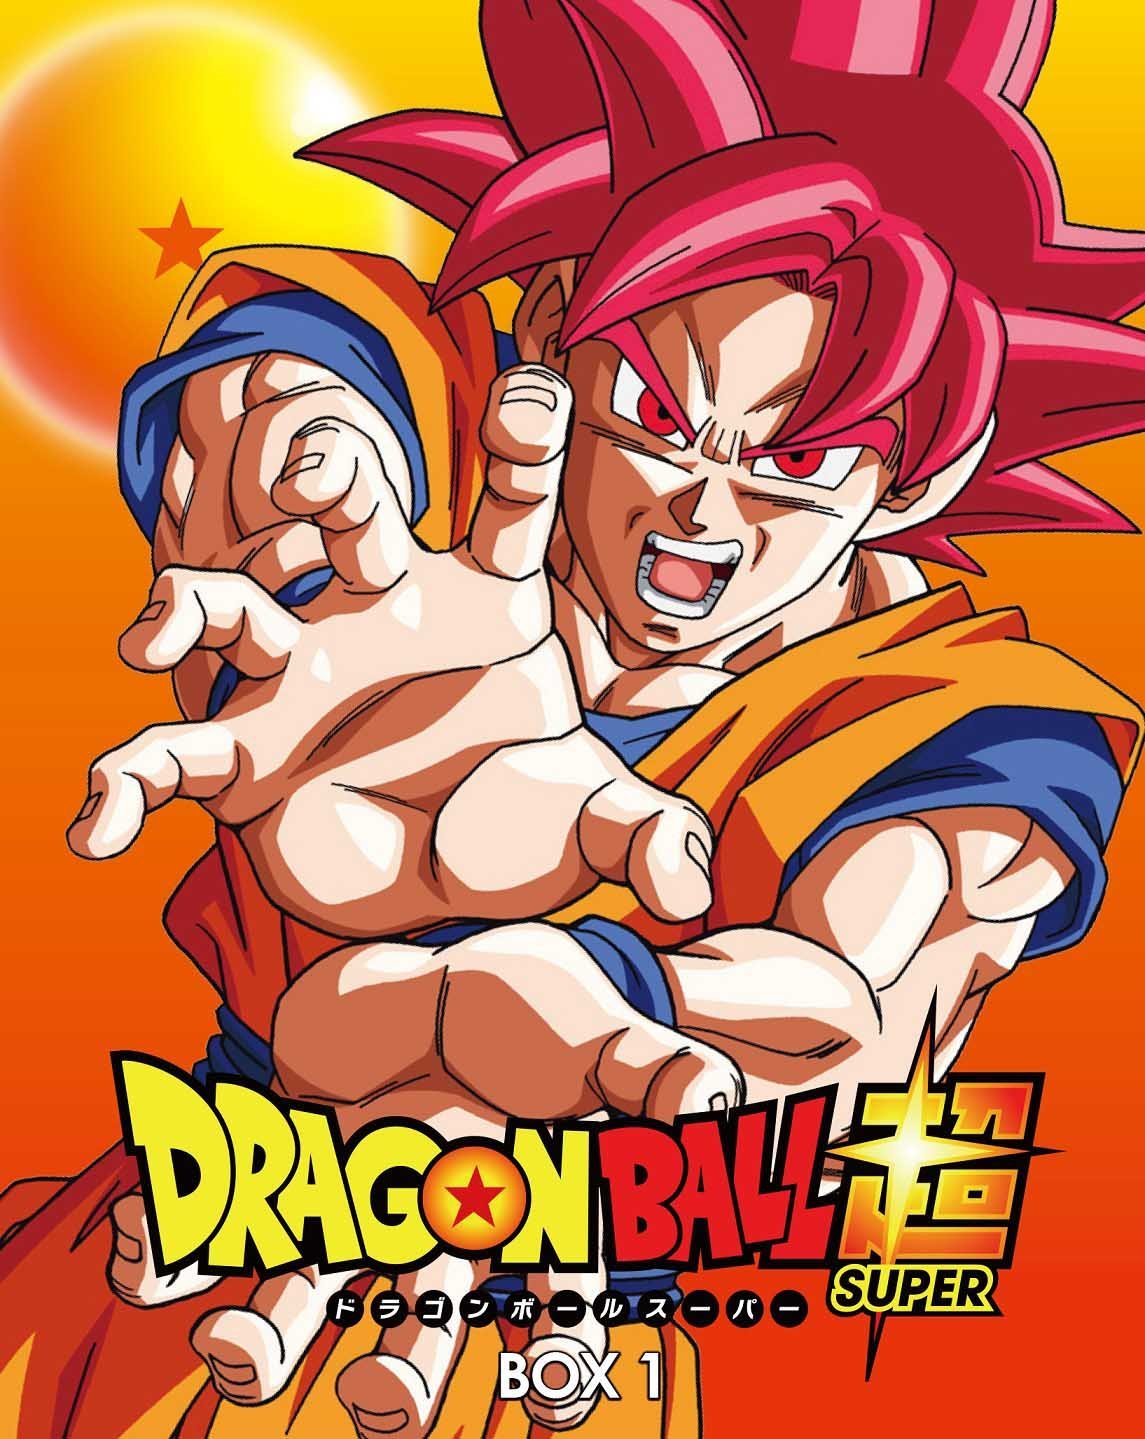 Dragon Ball Super Episode List